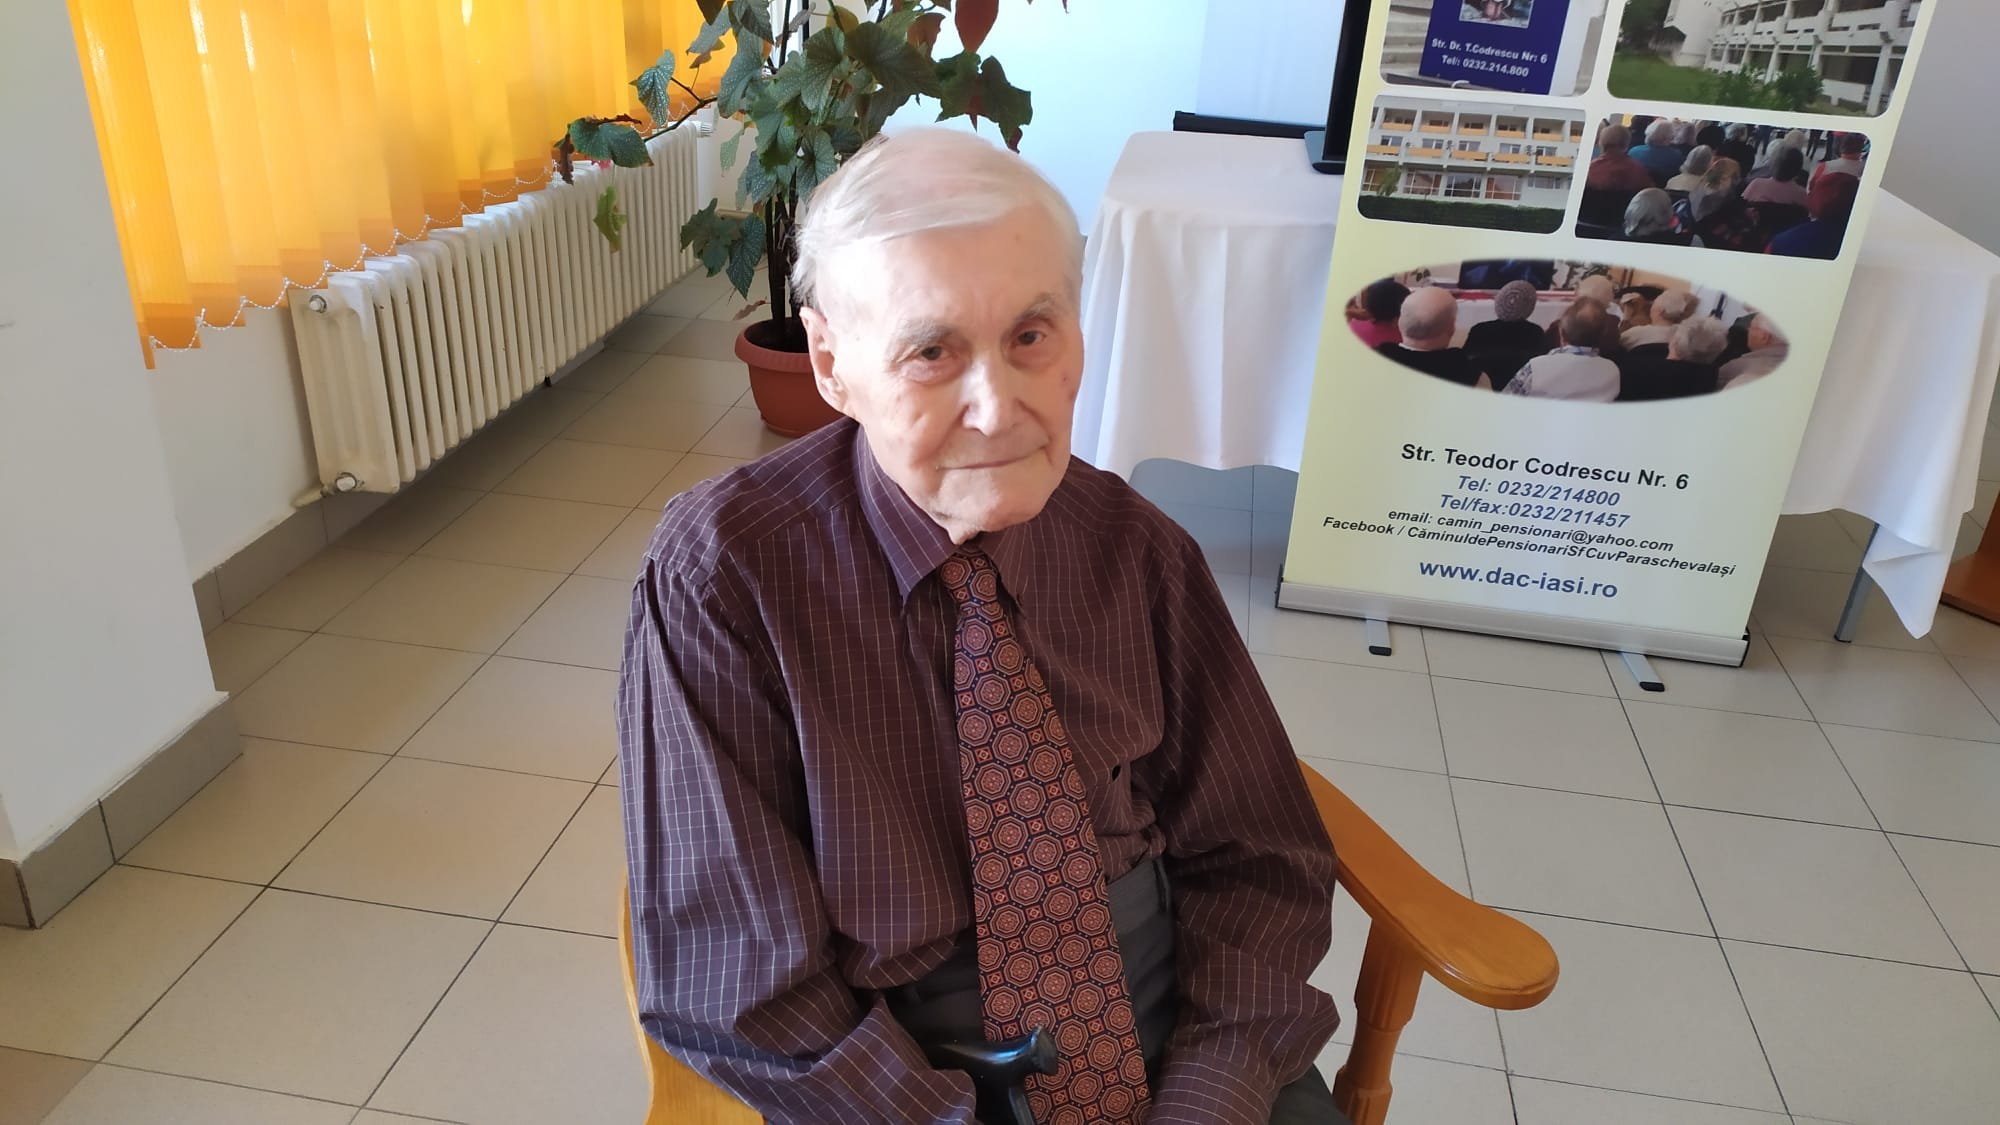  VIDEO: Secretele lui domn Vasile. La 102 ani face zilnic înviorare la ora 5.00 dimineaţa